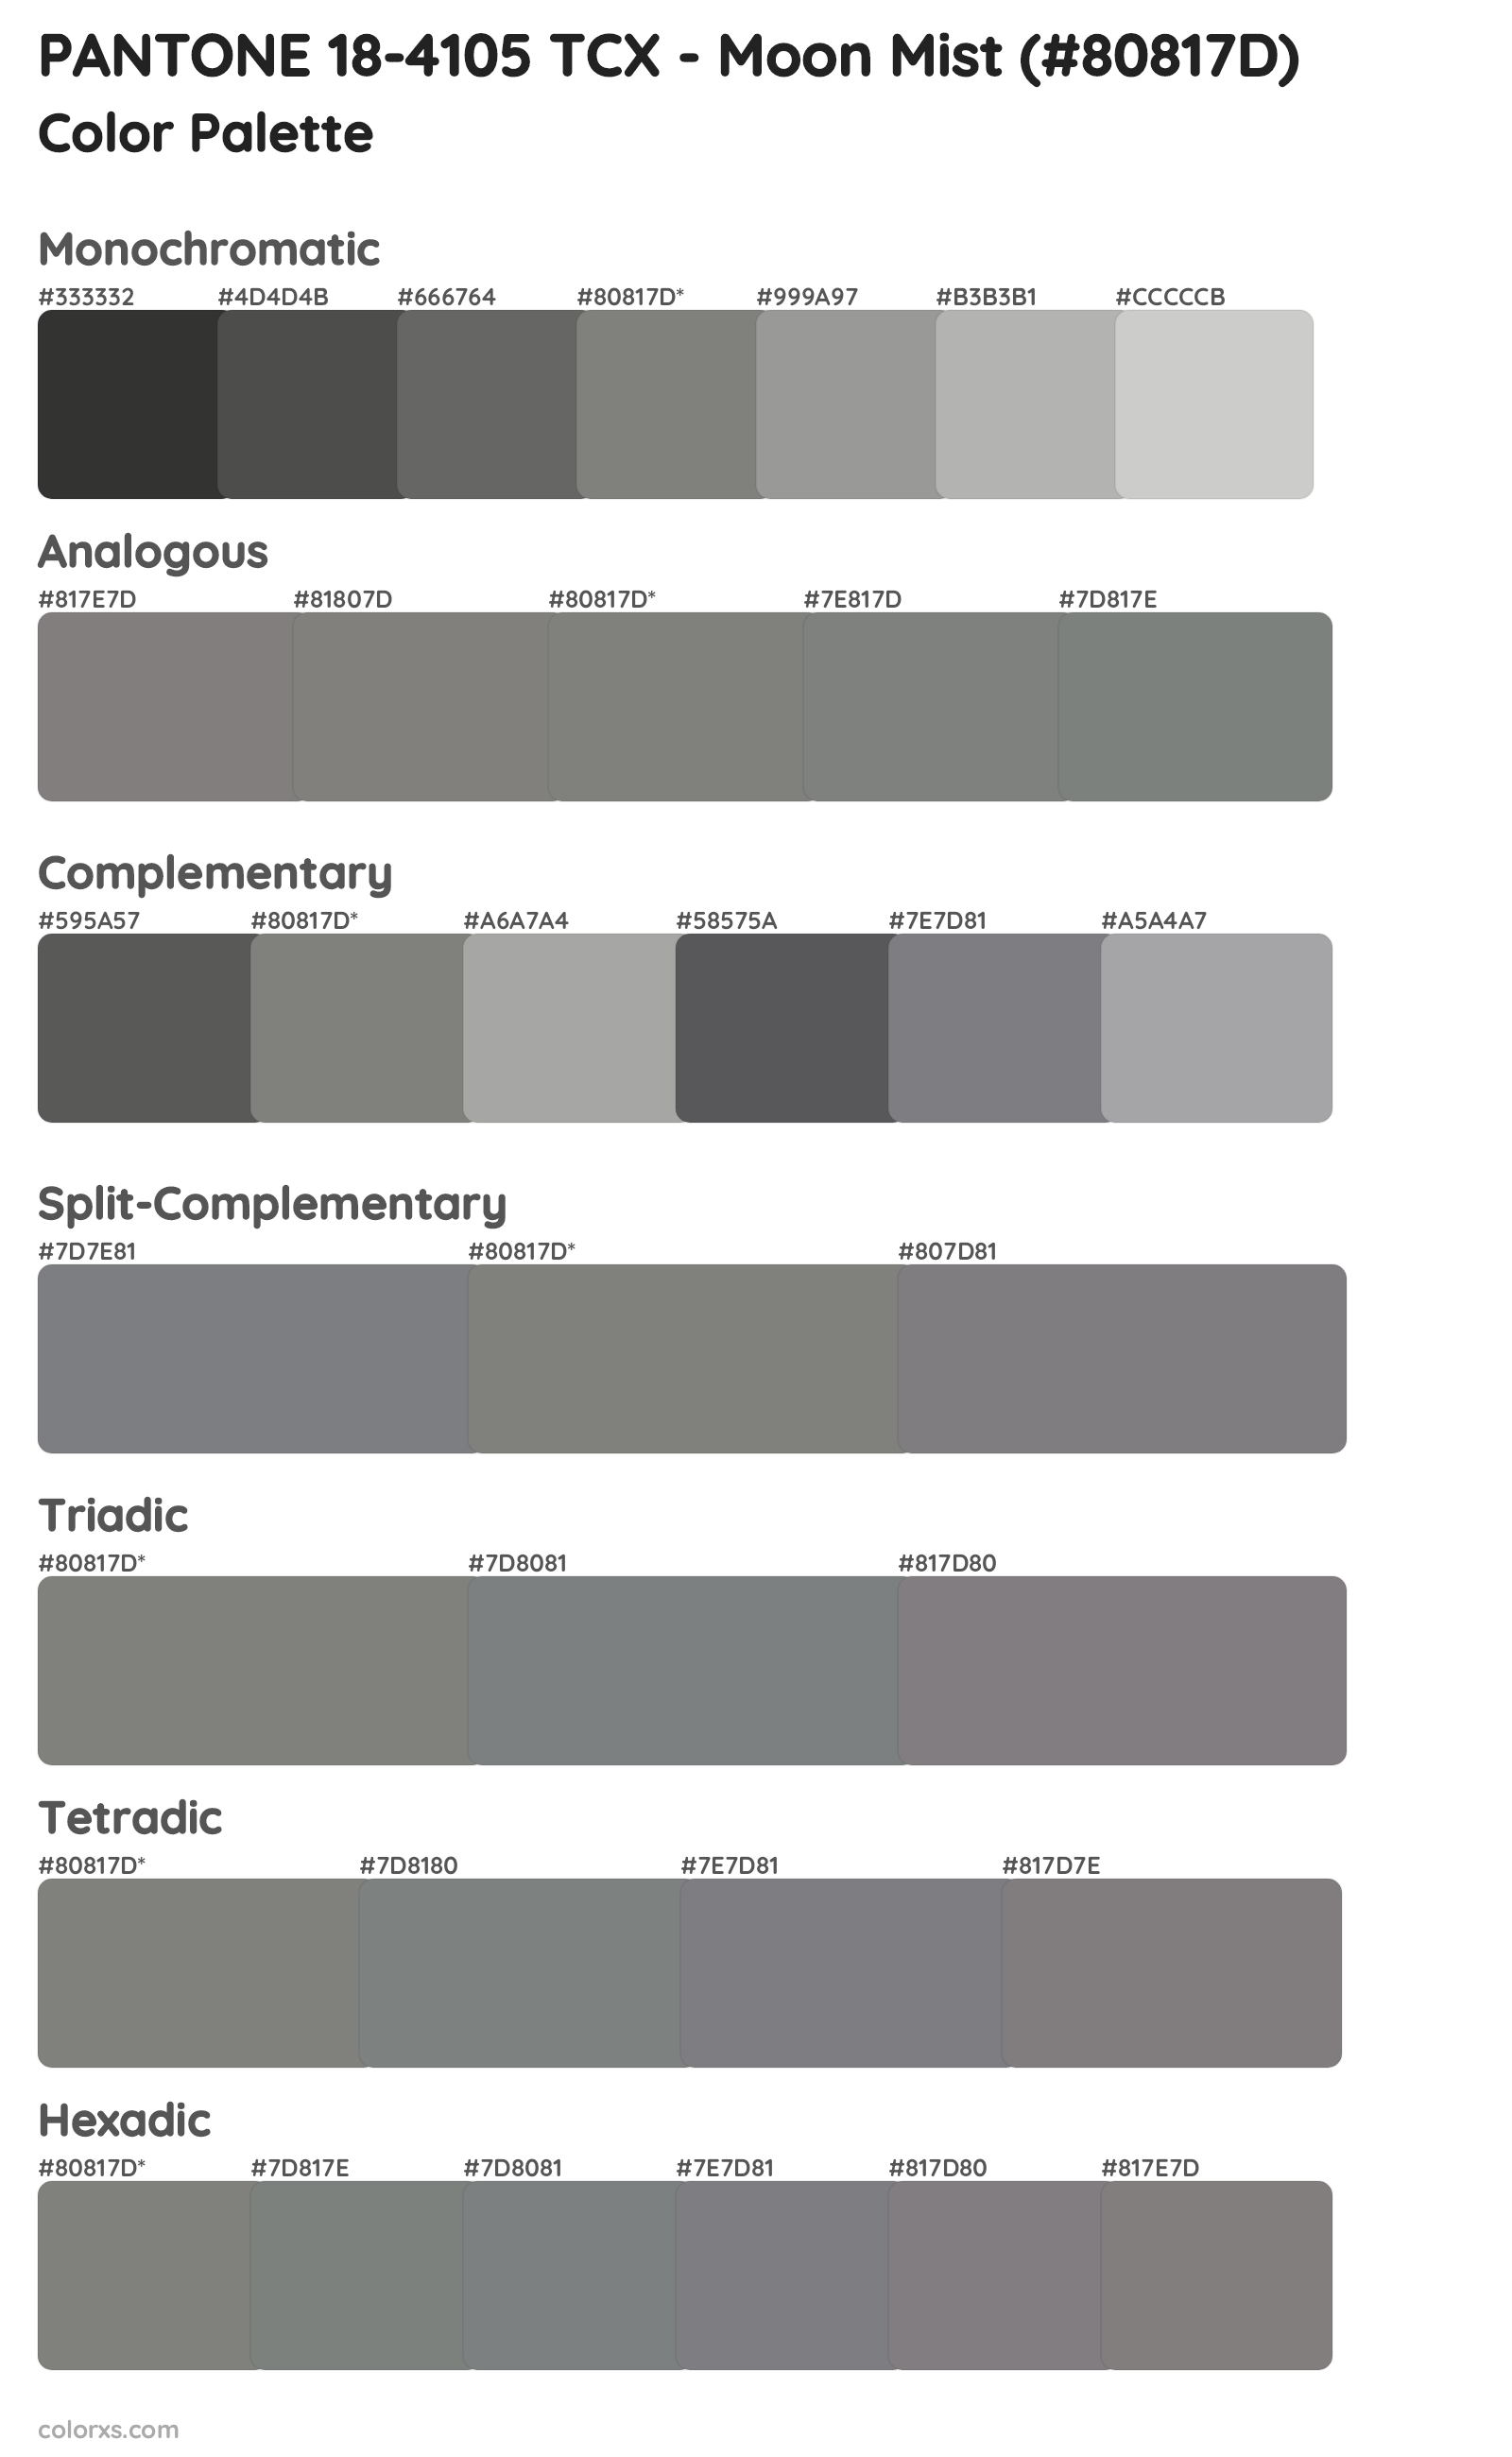 PANTONE 18-4105 TCX - Moon Mist Color Scheme Palettes